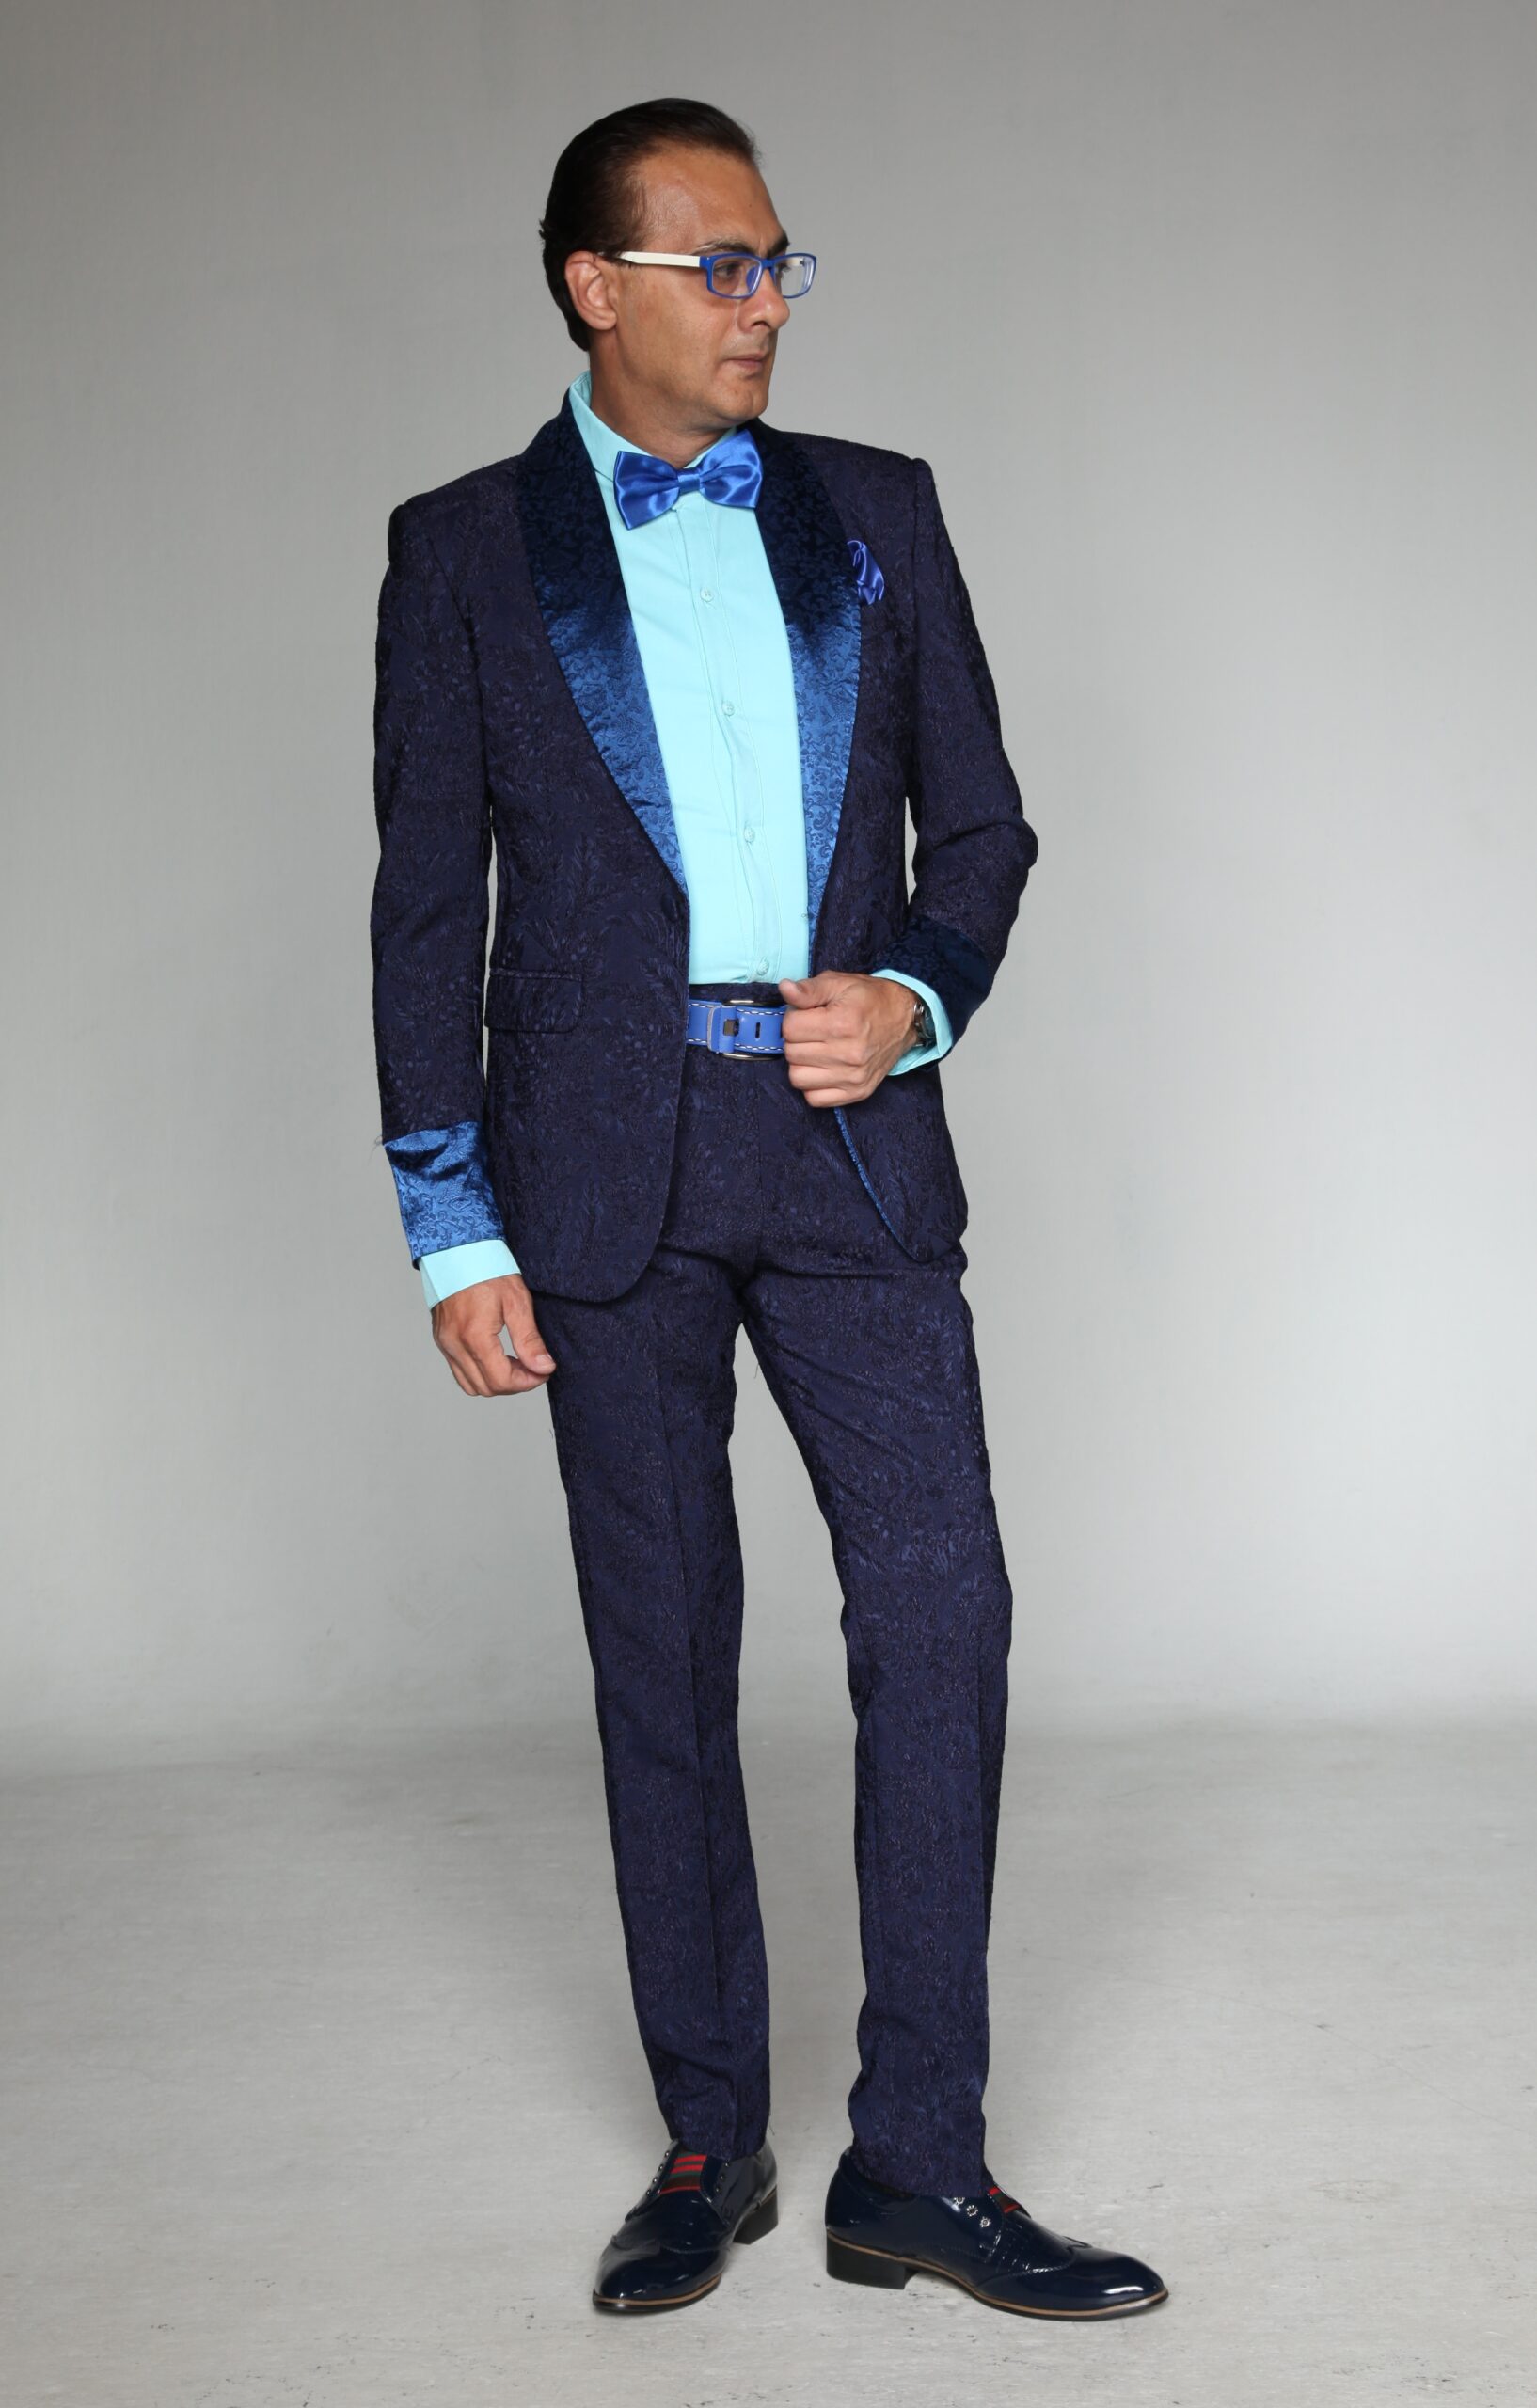 Mst 5023 01 Rent Rental Hire Tuxedo Suit Black Tie Suit Designer Suits Shop Tailor Tailors Singapore Wedding